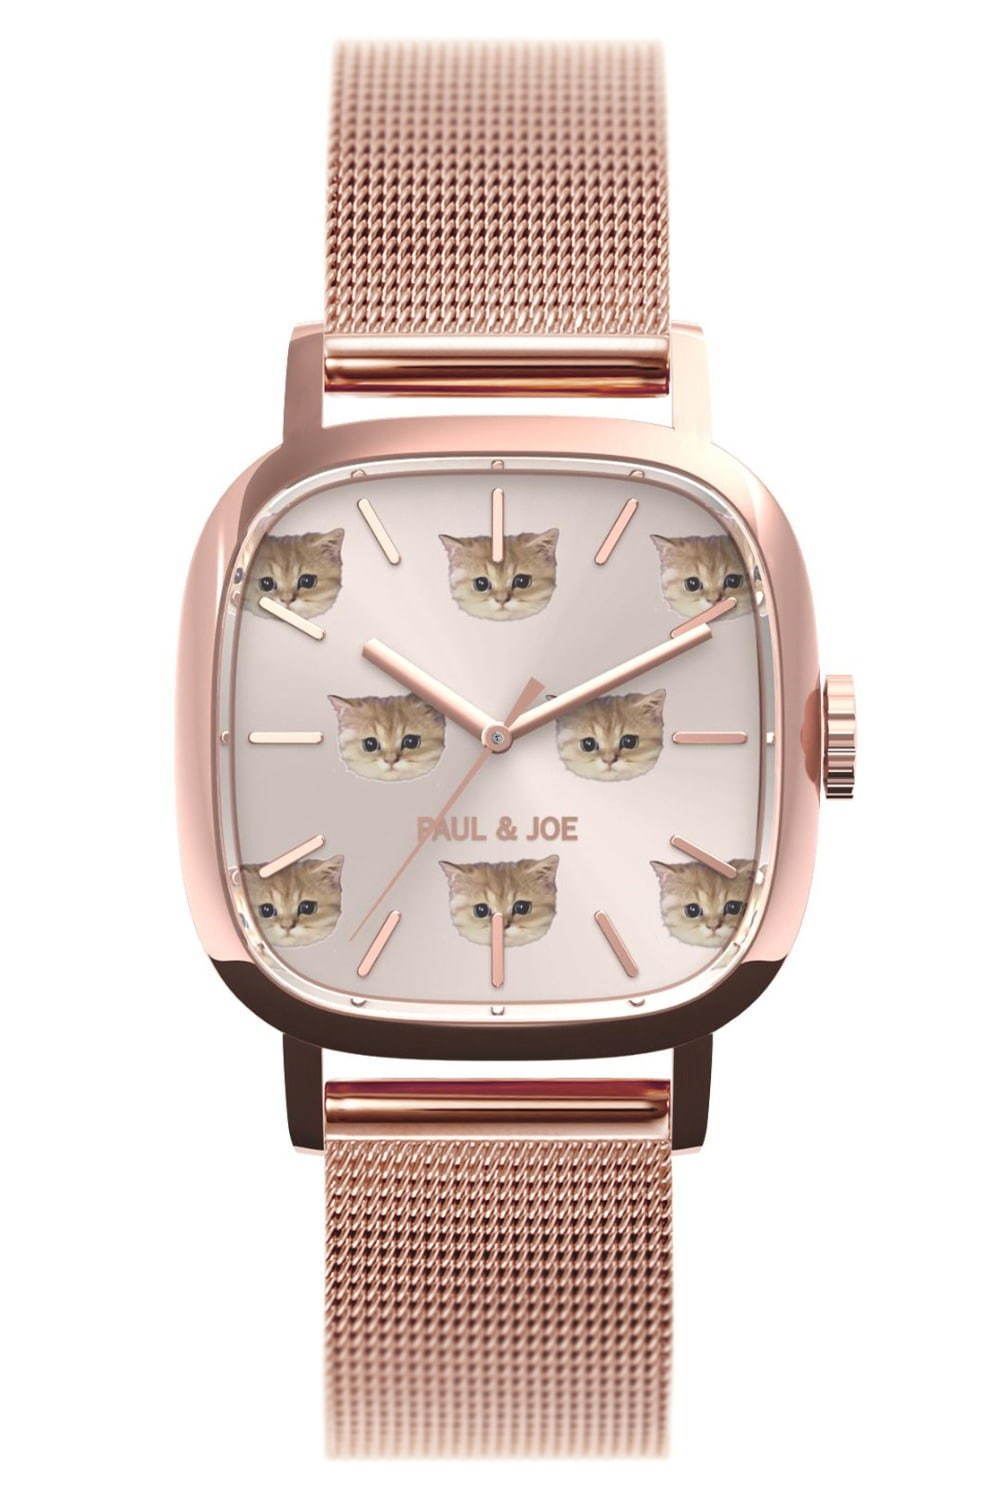 ポール ジョー 猫 モチーフの限定腕時計 スクエア ヌネット 猫の顔を描いた桜色ダイアル ファッションプレス